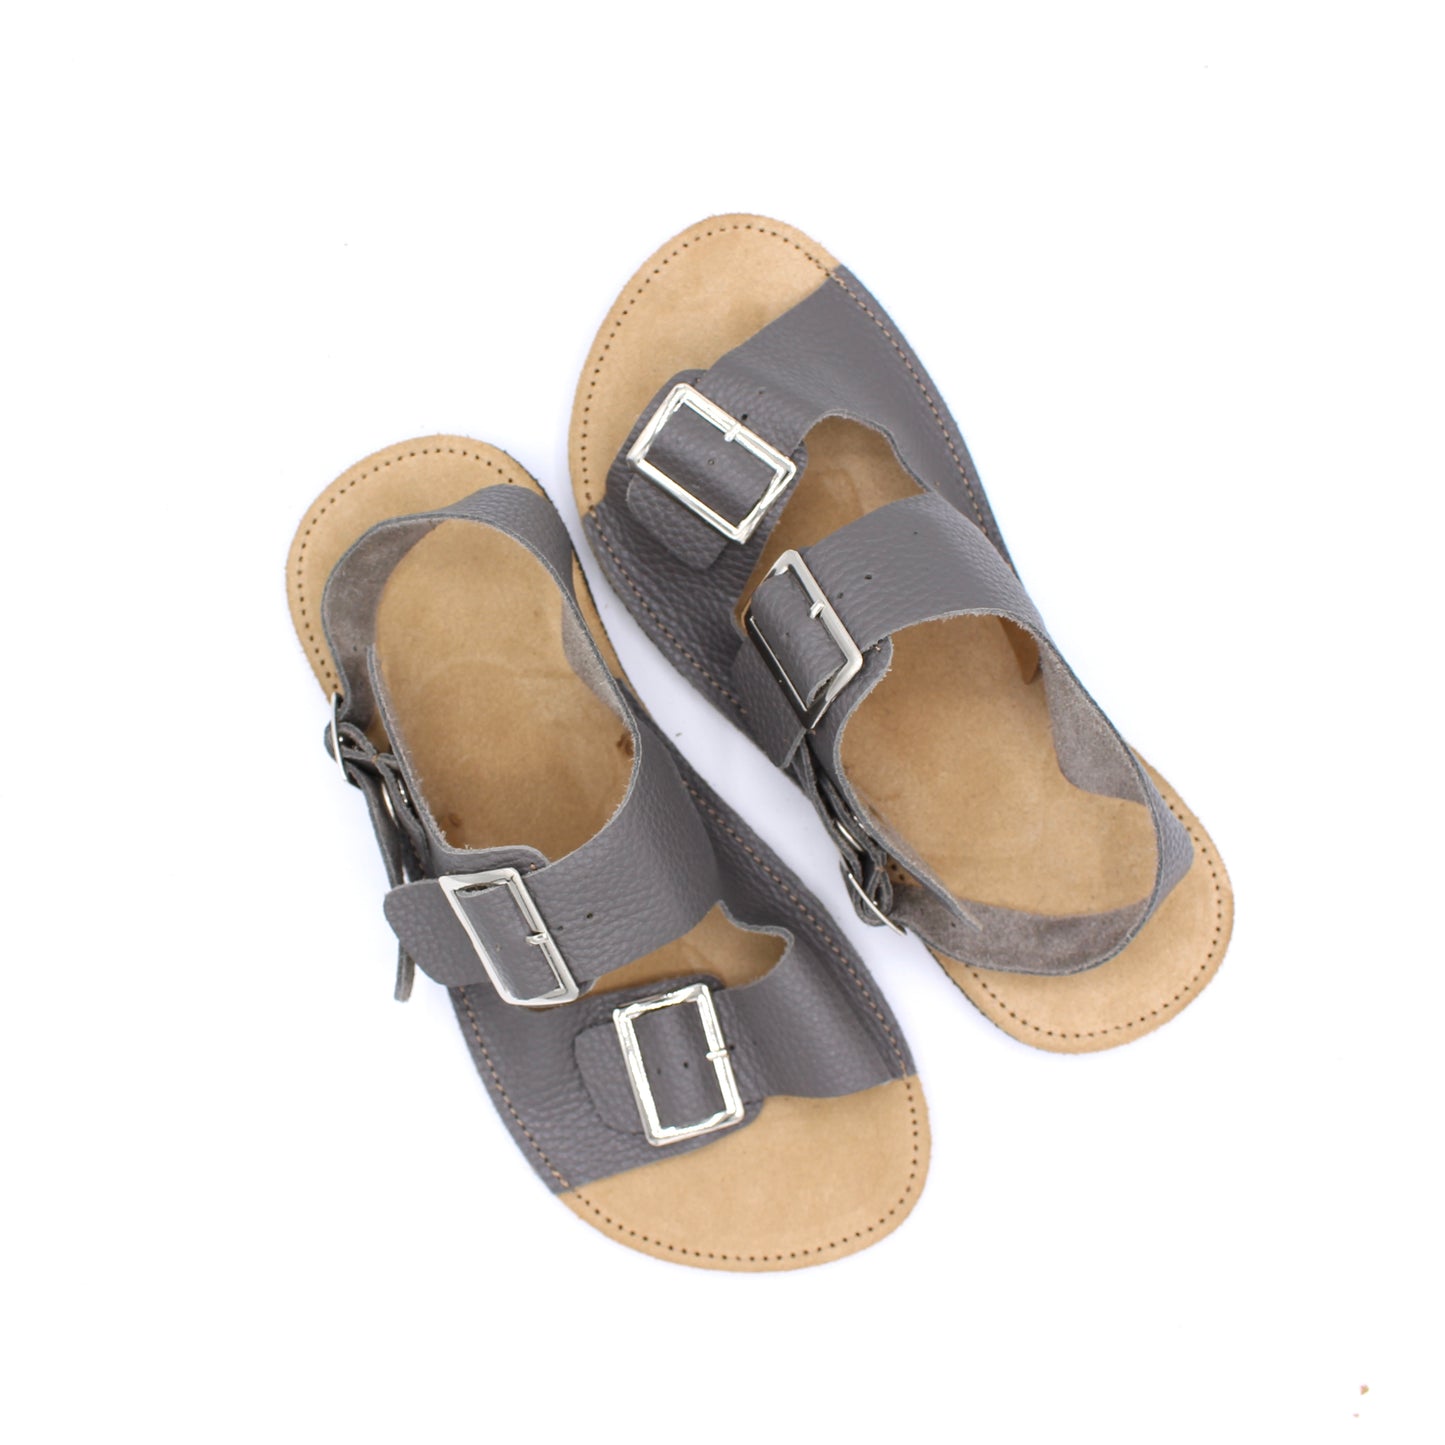 Ladies Buckle Sandals  - SHADOW GREY - -Silver Buckles - 6mm Black Hybrid Soles - Snaps